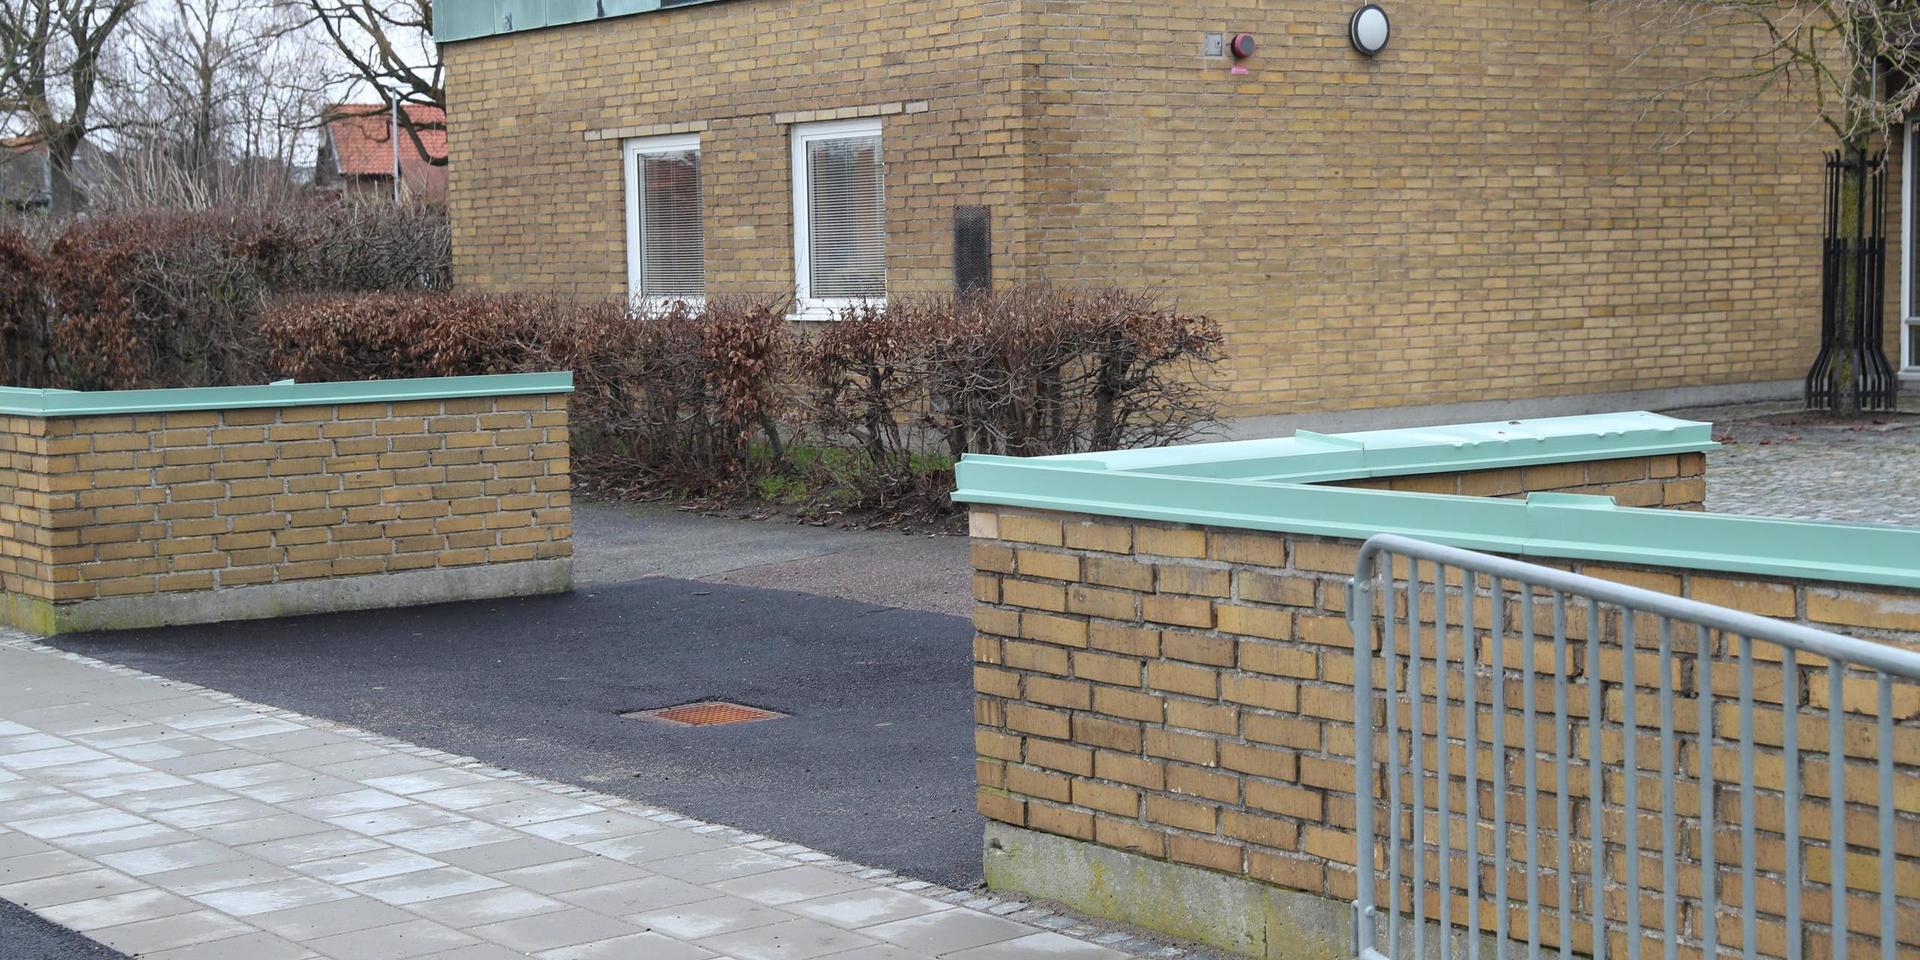 En skolelev i högstadieåldern fick skador som inledningsvis bedömdes som livshotande vid ett knivdåd på en skola i Trelleborg. Arkivbild.